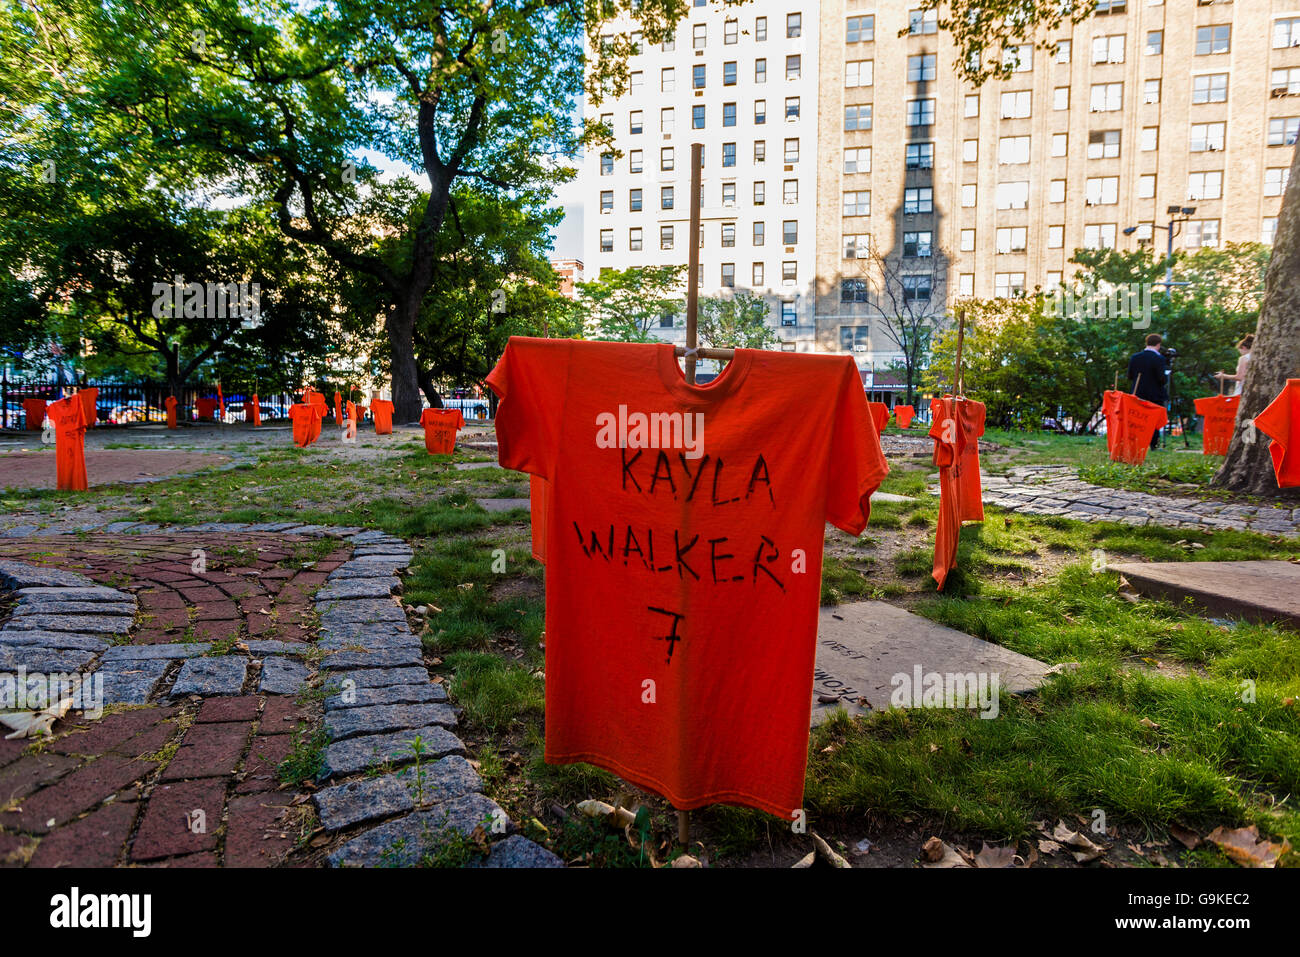 New York, USA 29 juin 2016 dans le cadre du Mois de sensibilisation à la violence des armes à feu les bénévoles Orange t-shirts plantés dans la cour de St Mark's Church dans le Bowery qui portent les noms des victimes de la violence armée ©Stacy Walsh Rosenstock Banque D'Images